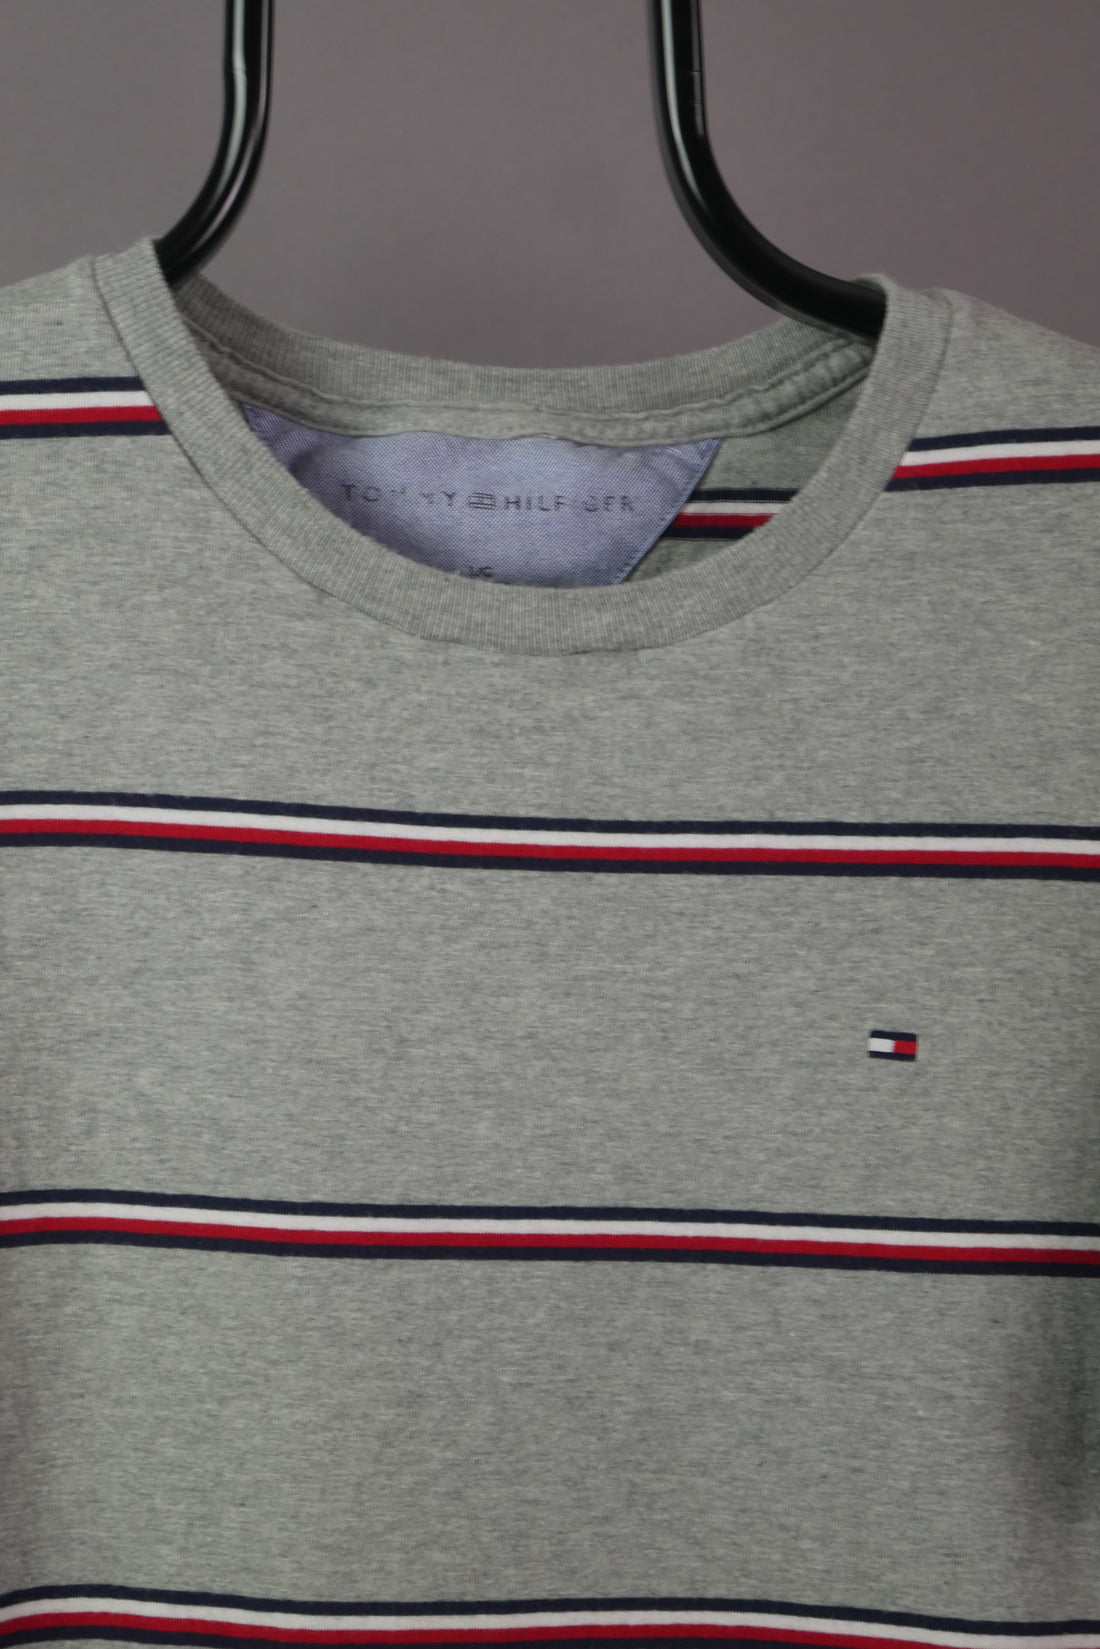 The Tommy Hilfiger Striped T-Shirt (L)